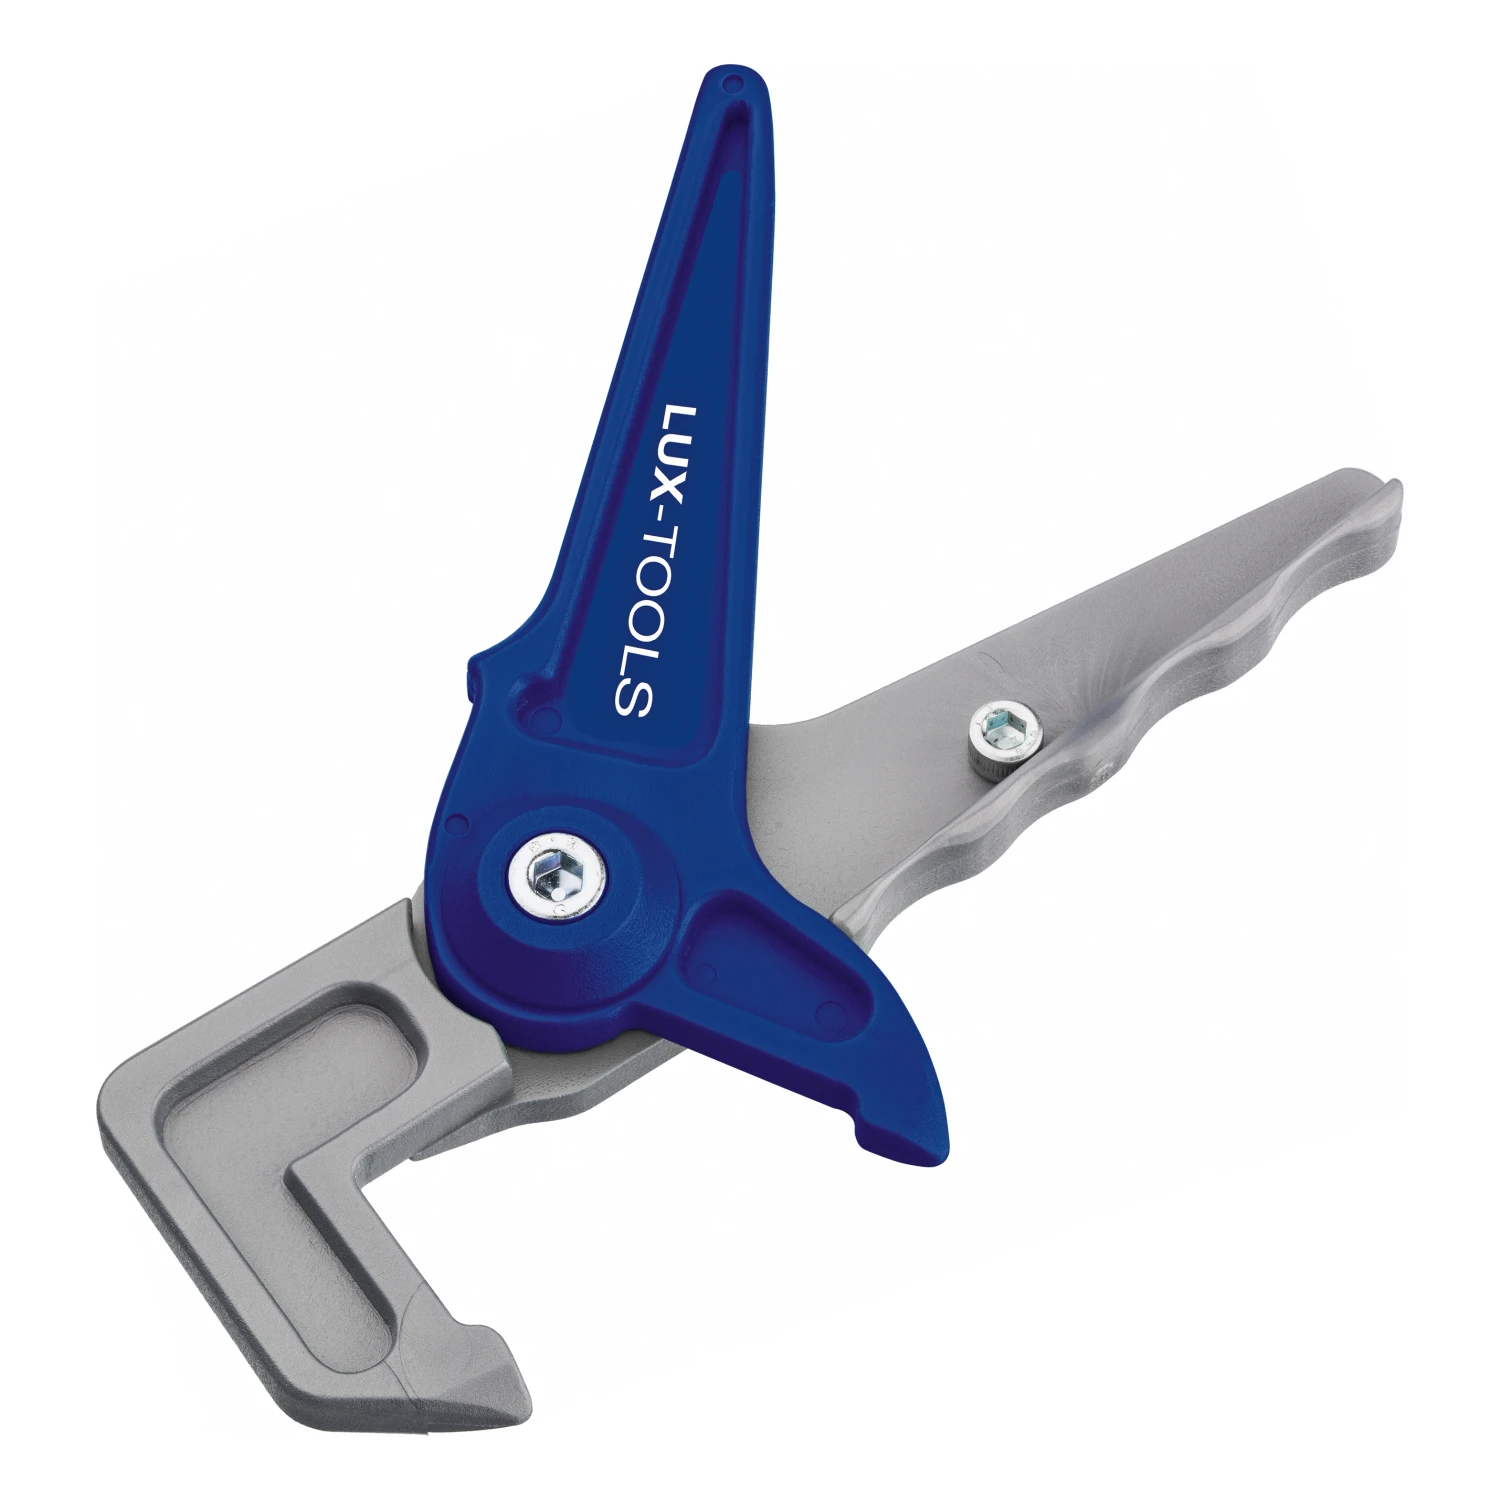 Ens tools. 64 0220 Lux Tools. Инструмент для сантехники. Специальный сантехнический инструмент. Зажимы Lux-Tools.